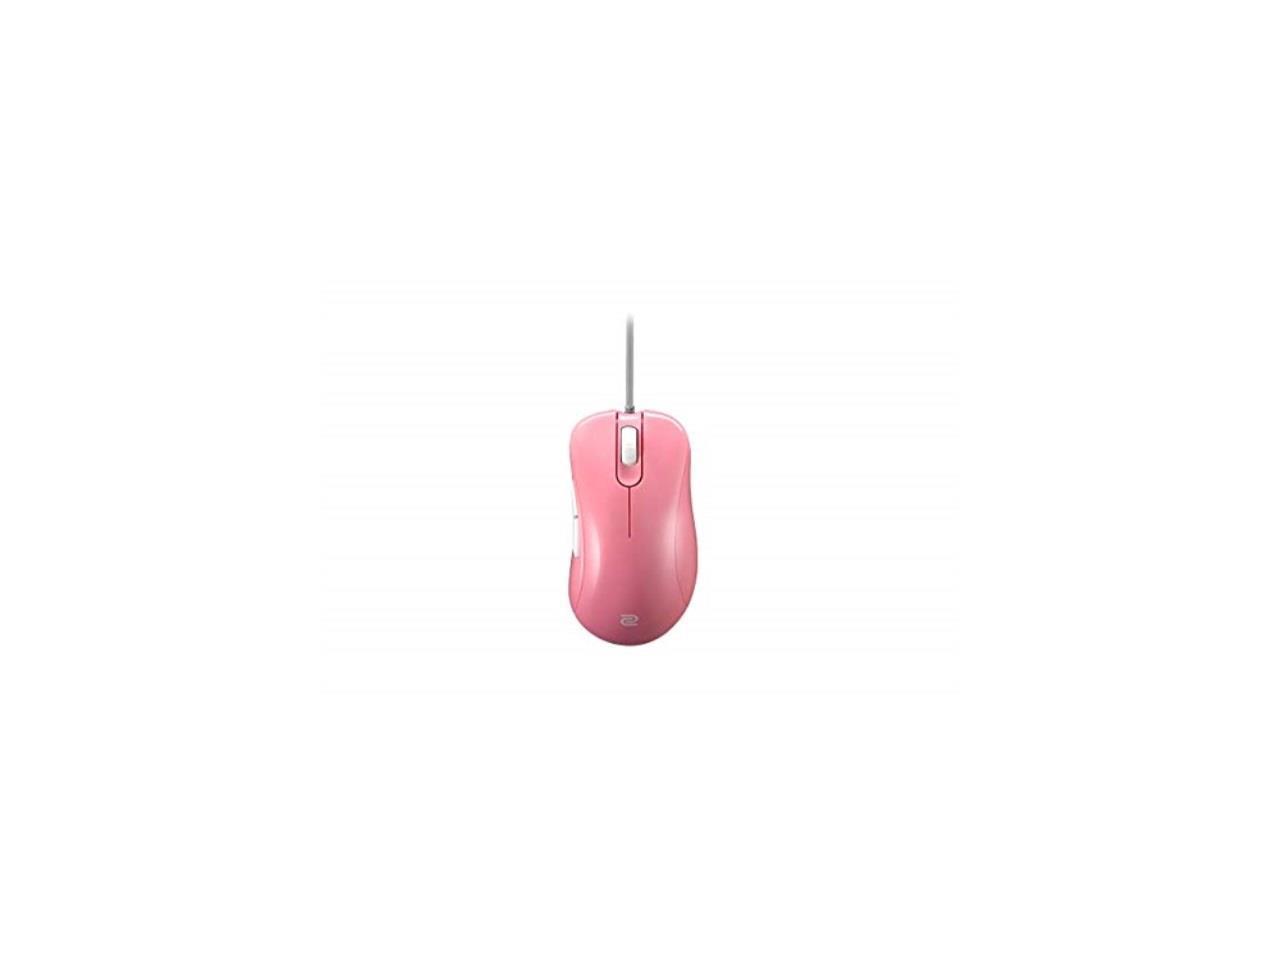 Benq Zowie Ec2b Divina Pink Ergonomic Gaming Mouse For Esports Medium Newegg Com